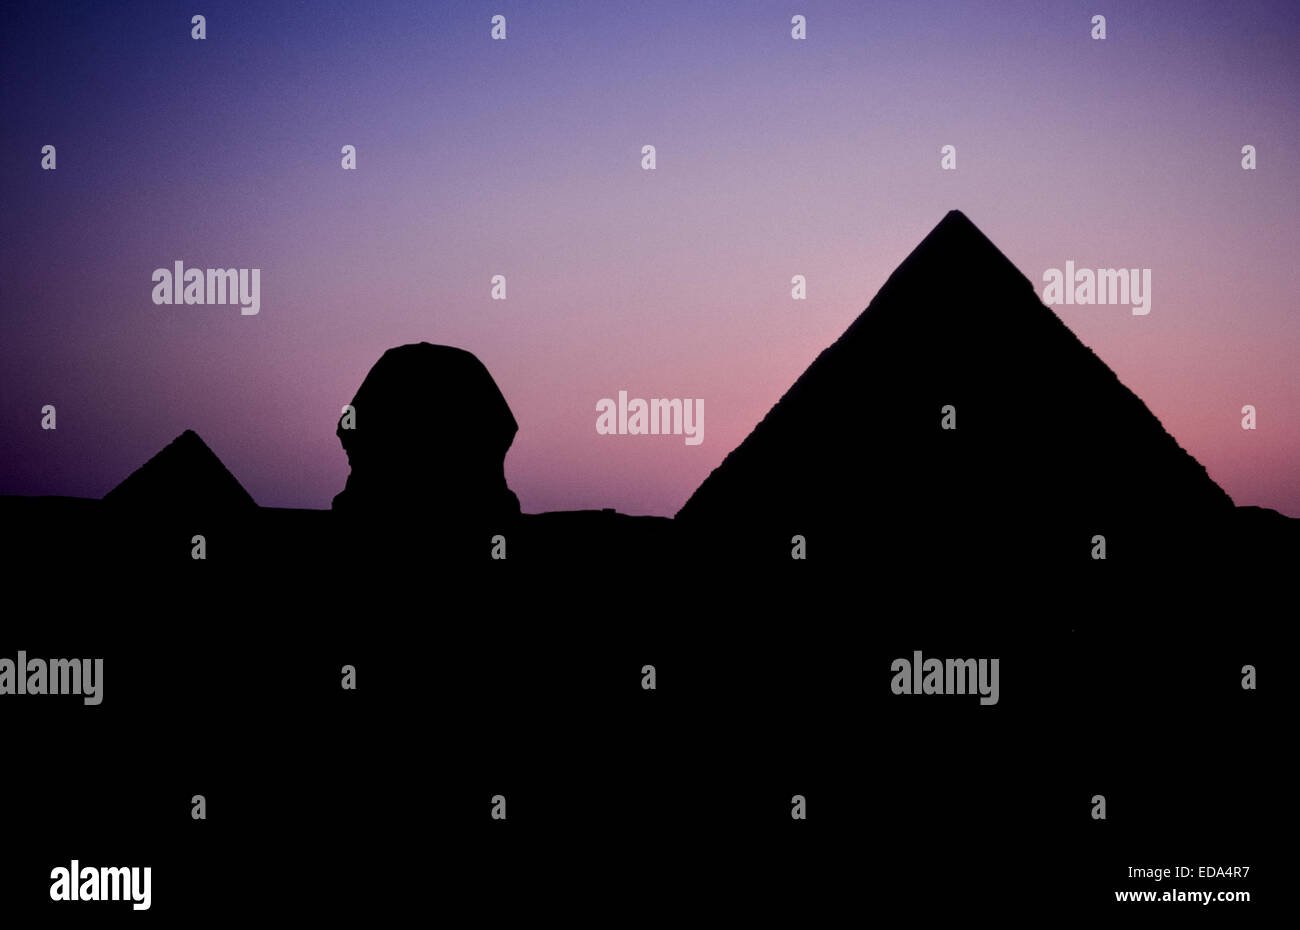 Die große Sphinx und zwei der drei Pyramiden von Gizeh am Stadtrand von Kairo, Ägypten, sind bei Sonnenuntergang Silhouette. Stockfoto